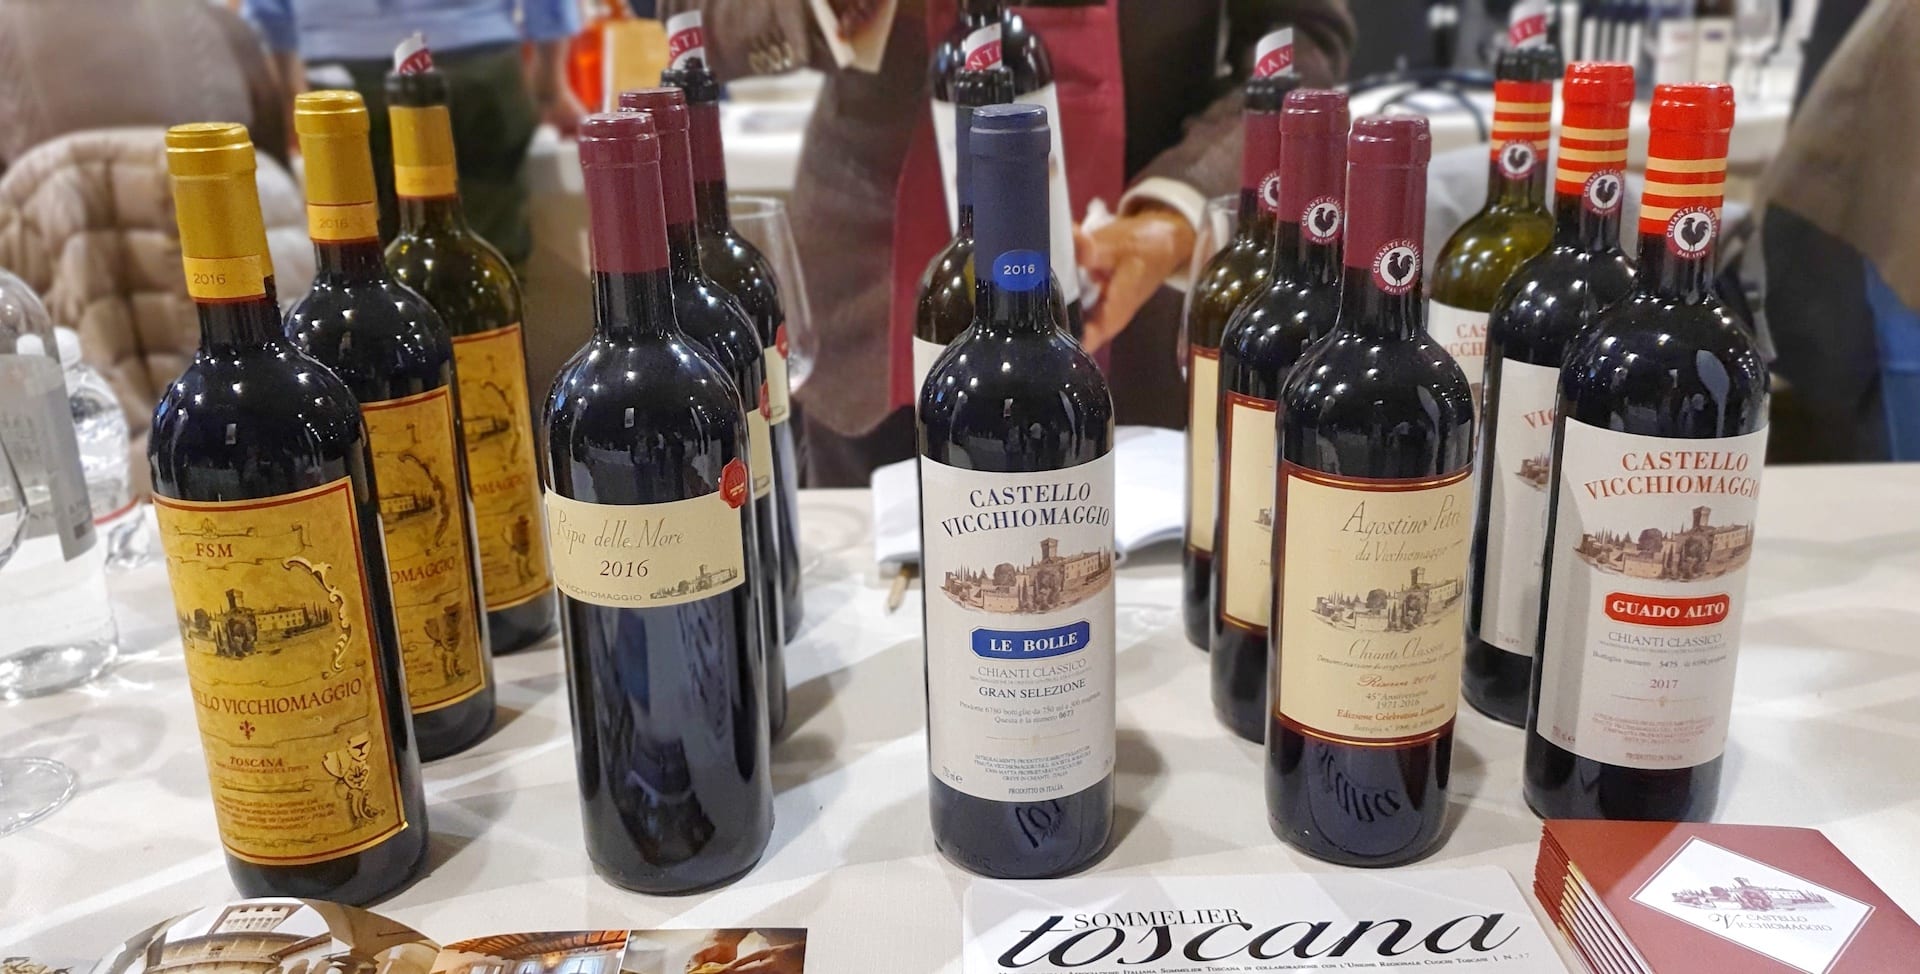 Castello di Vicchiomaggio e Fsm al Food & Wine 2019